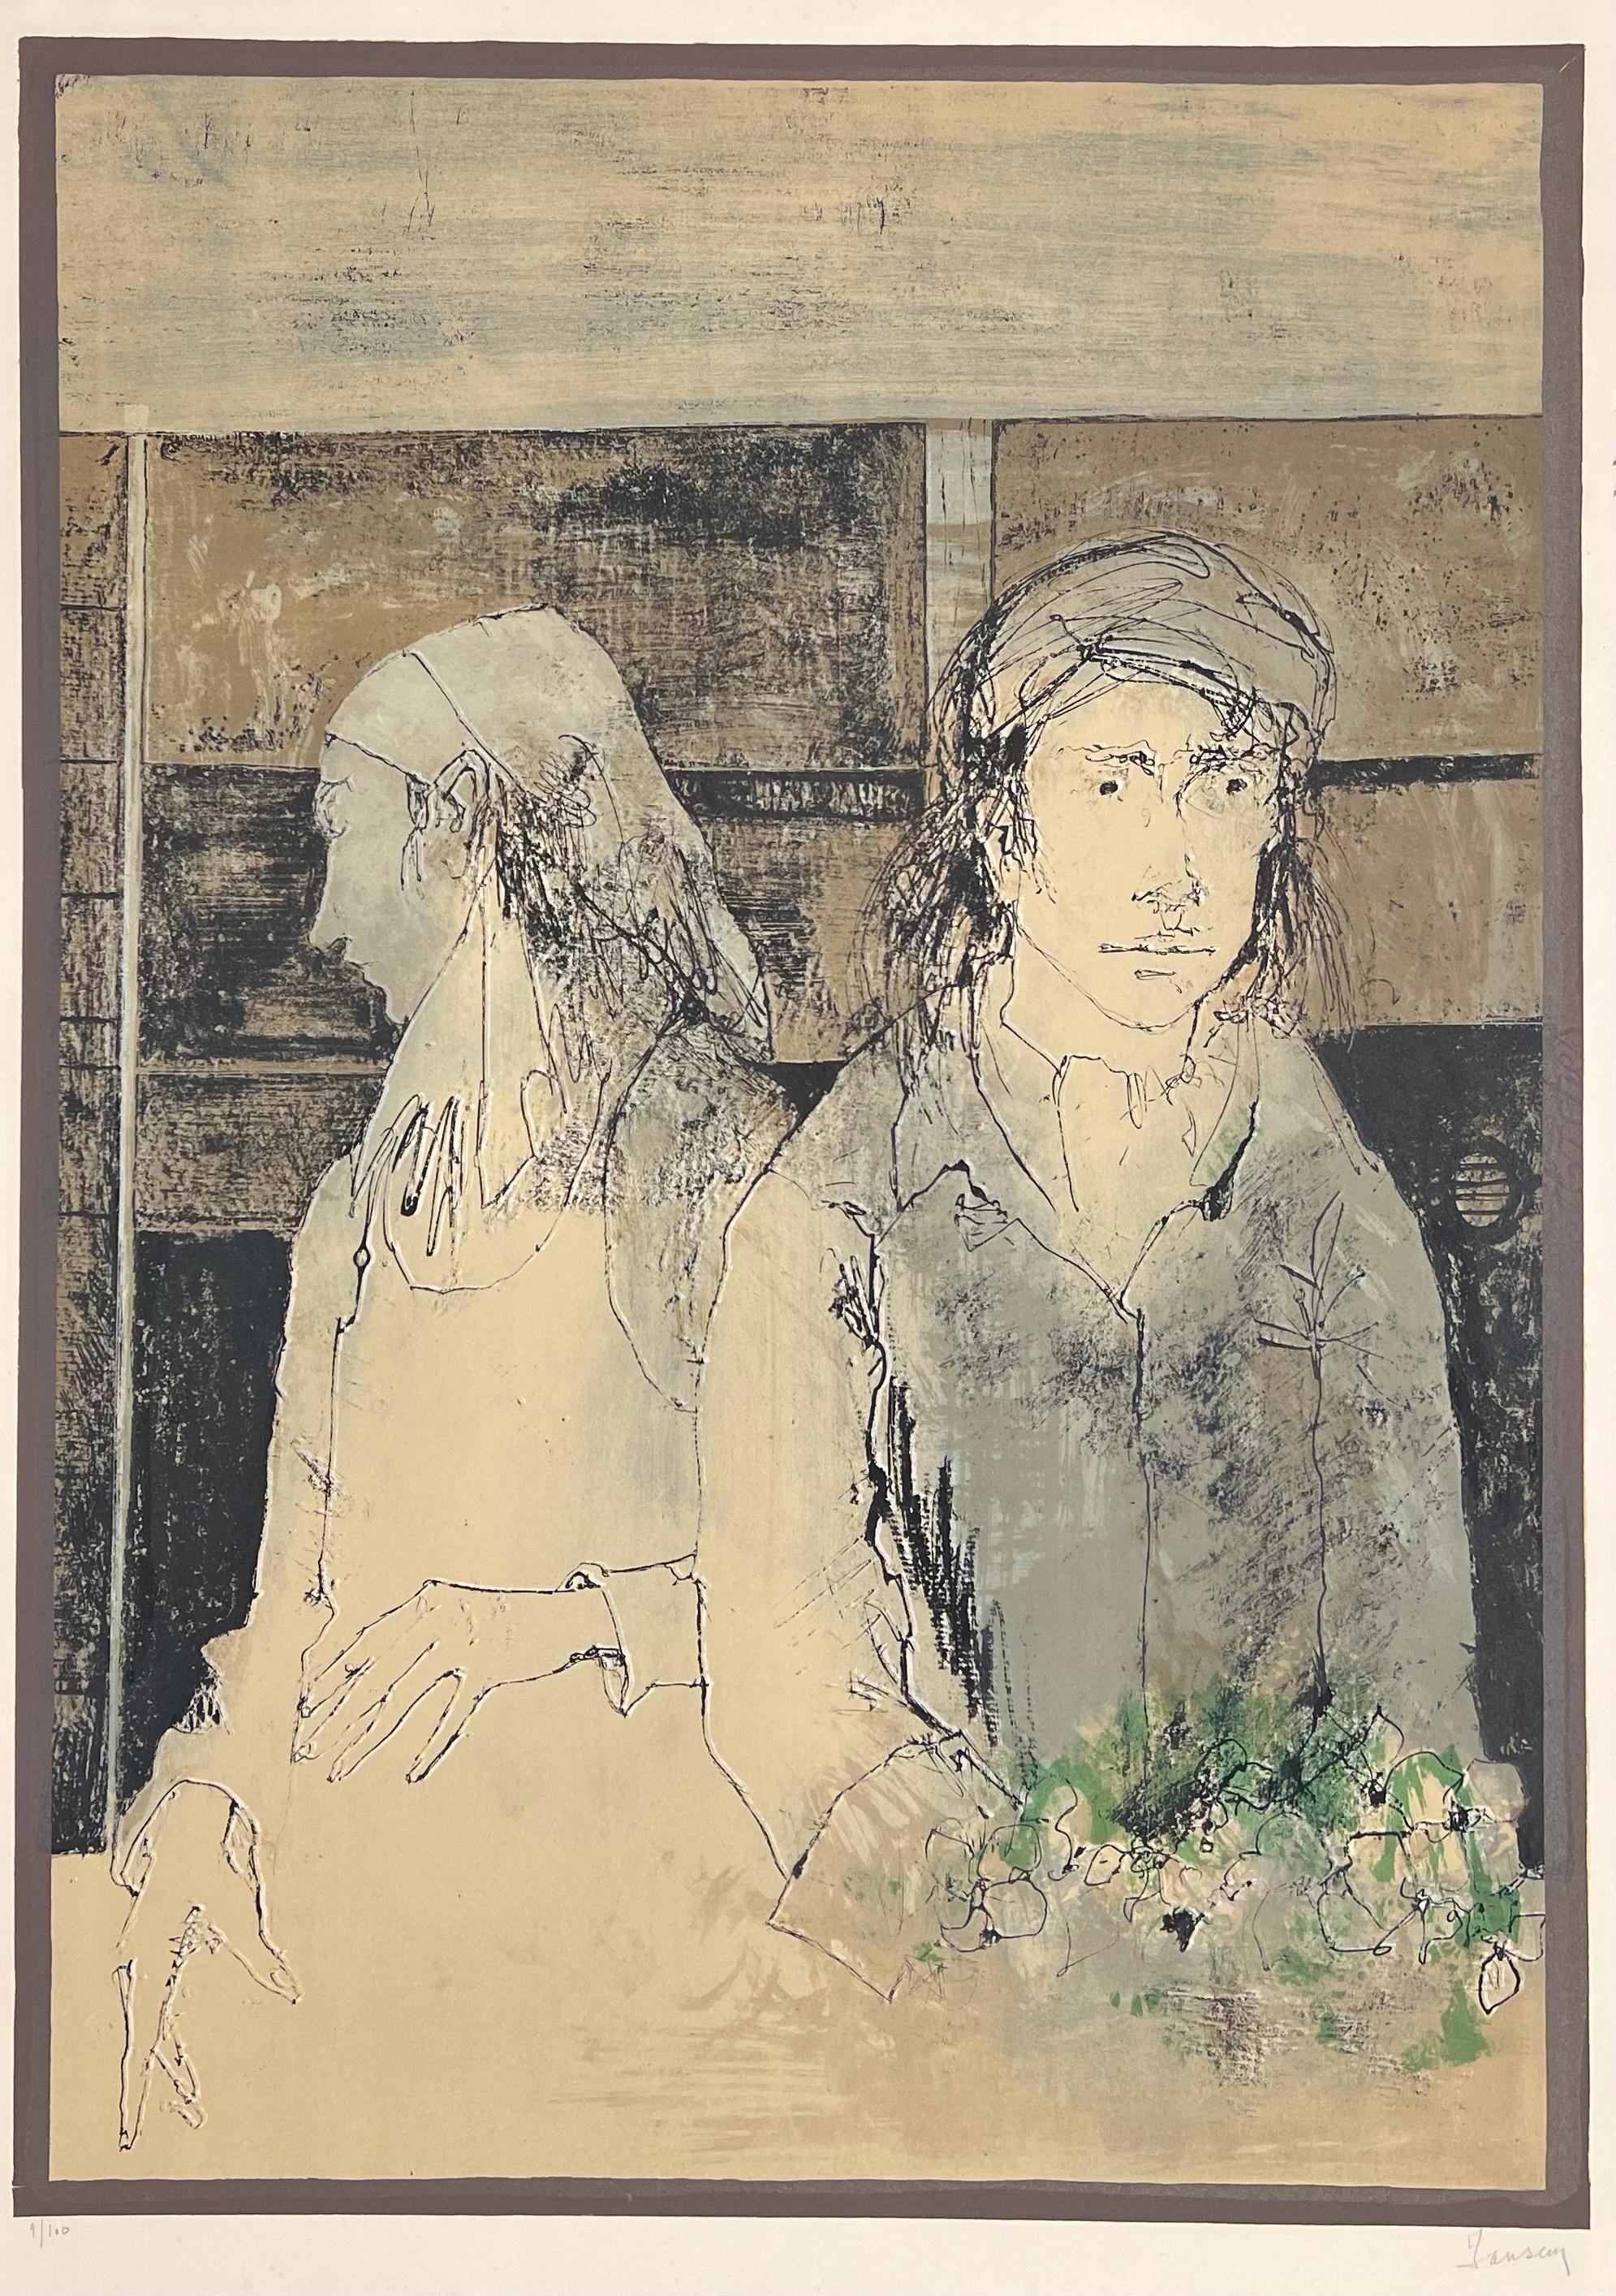 Jean Jansem (1920-2013) 
Le couple au bouquet vert, 1974
Lithographie sur papier Arches
Signée en bas à droite et justifiée en bas à gauche 
69 x 51,5 cm / 76 x 54,5 cm

D'une édition à 100 exemplaires  et 15 épreuves d'artistes.

Bibliographie